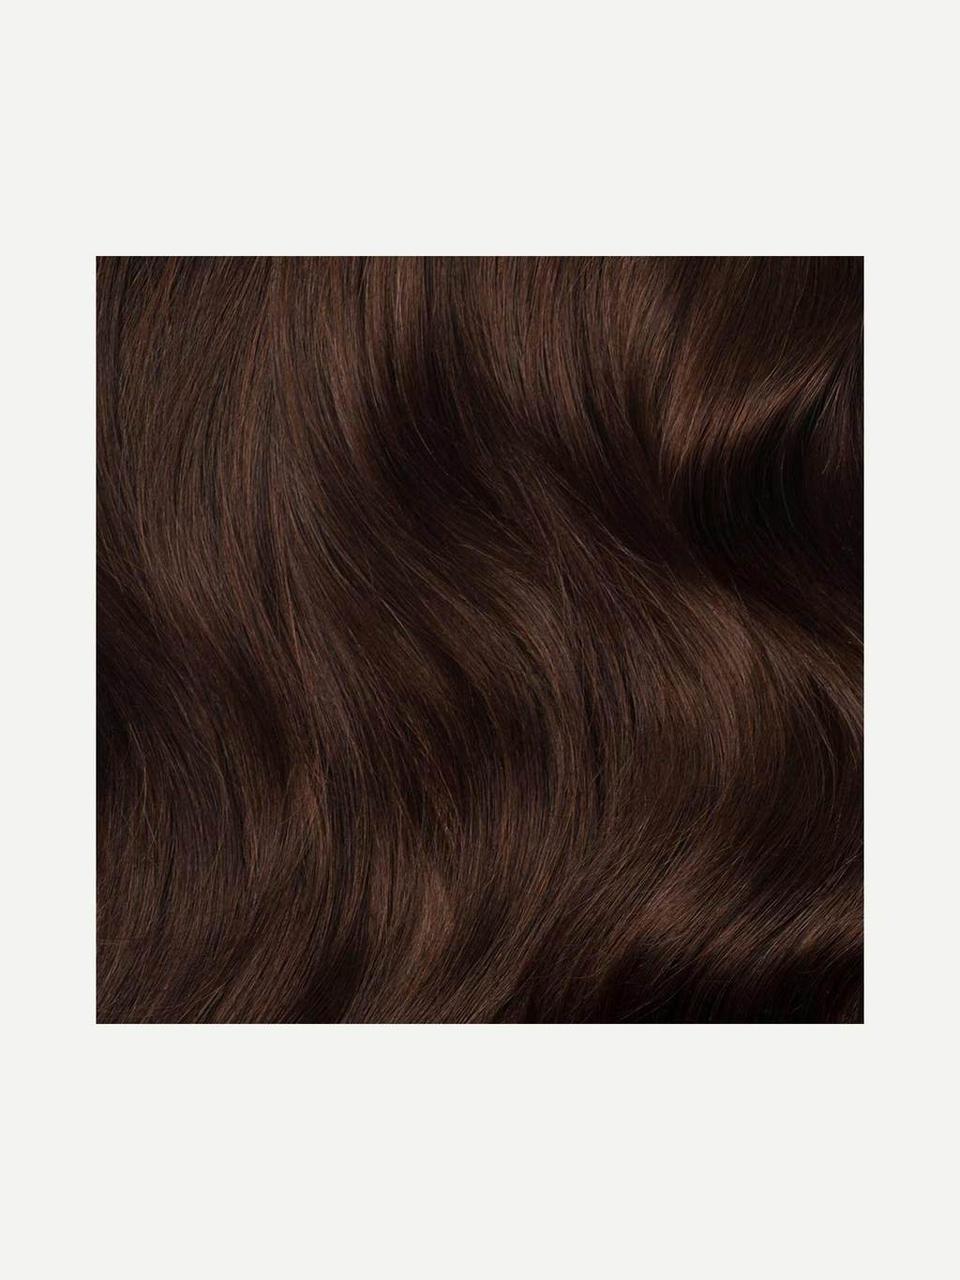 Волосся для нарощування Luxy Hair Chocolate Brown 4 натуральне  220 грамм ( в упаковке)